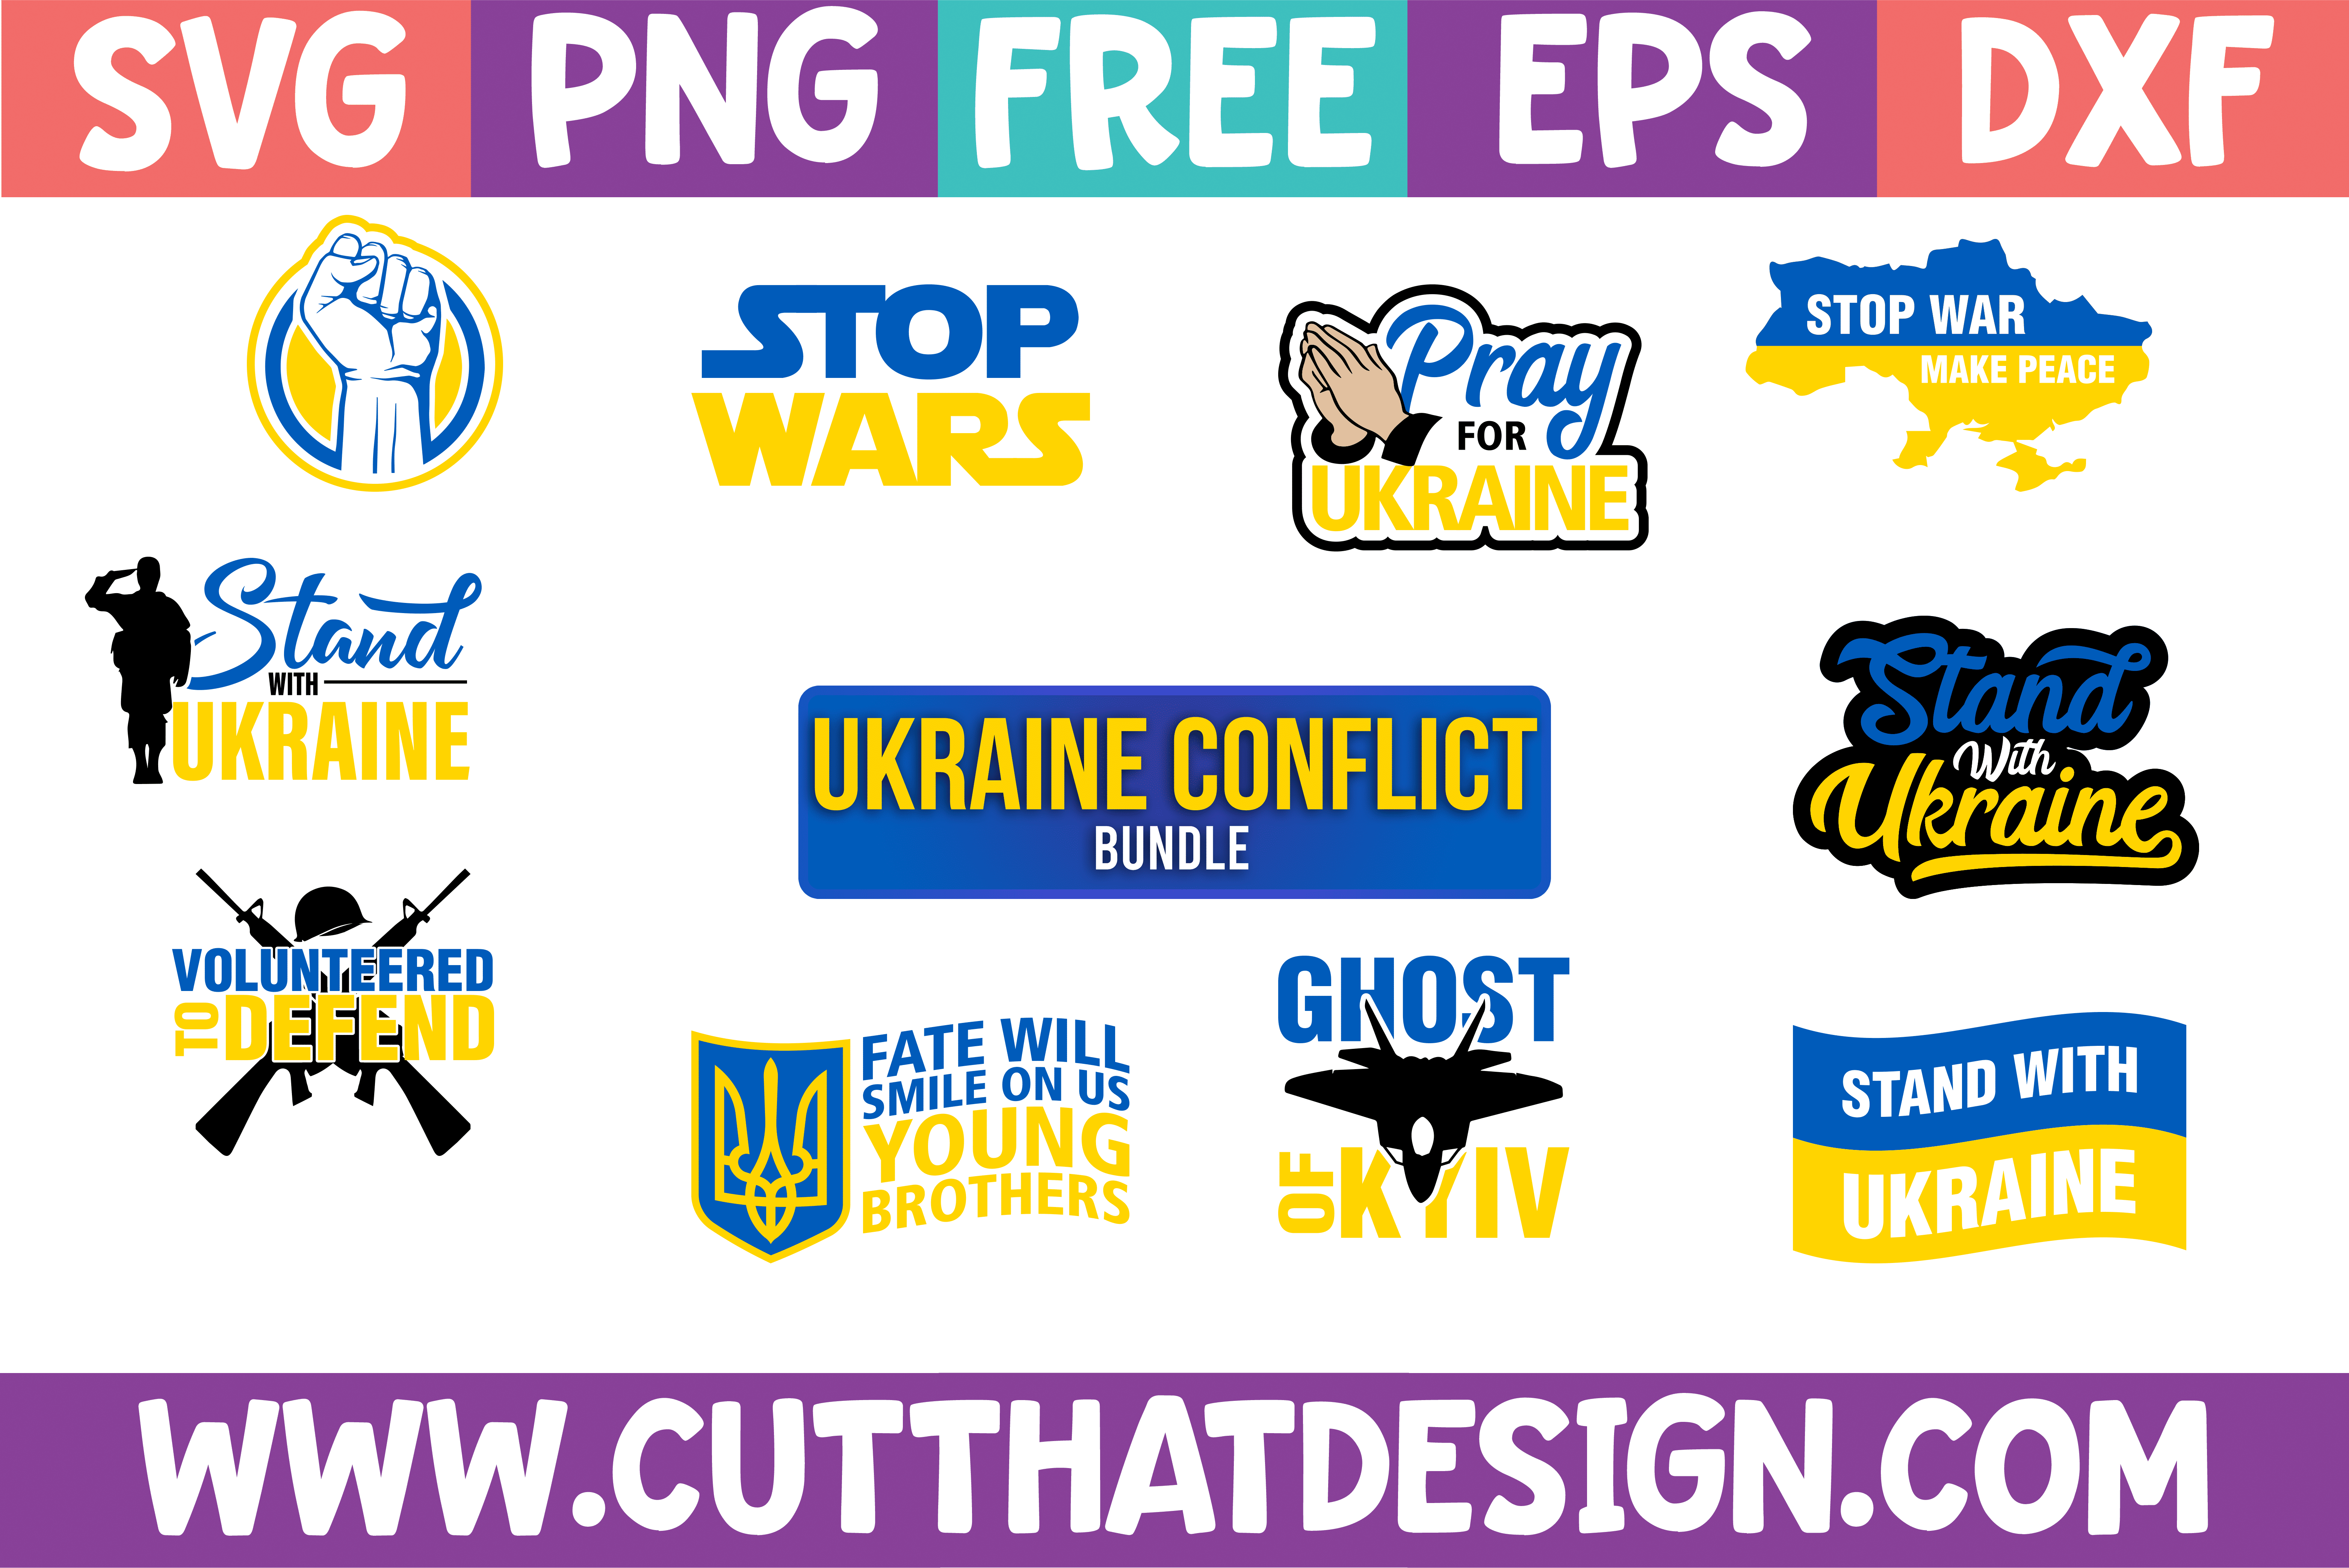 Cricut Printable Instant Digital Download SVG Png Psd Jpg Free Ukraine SVG No War Russia Svg File I Stand With Ukraine Design Kiev